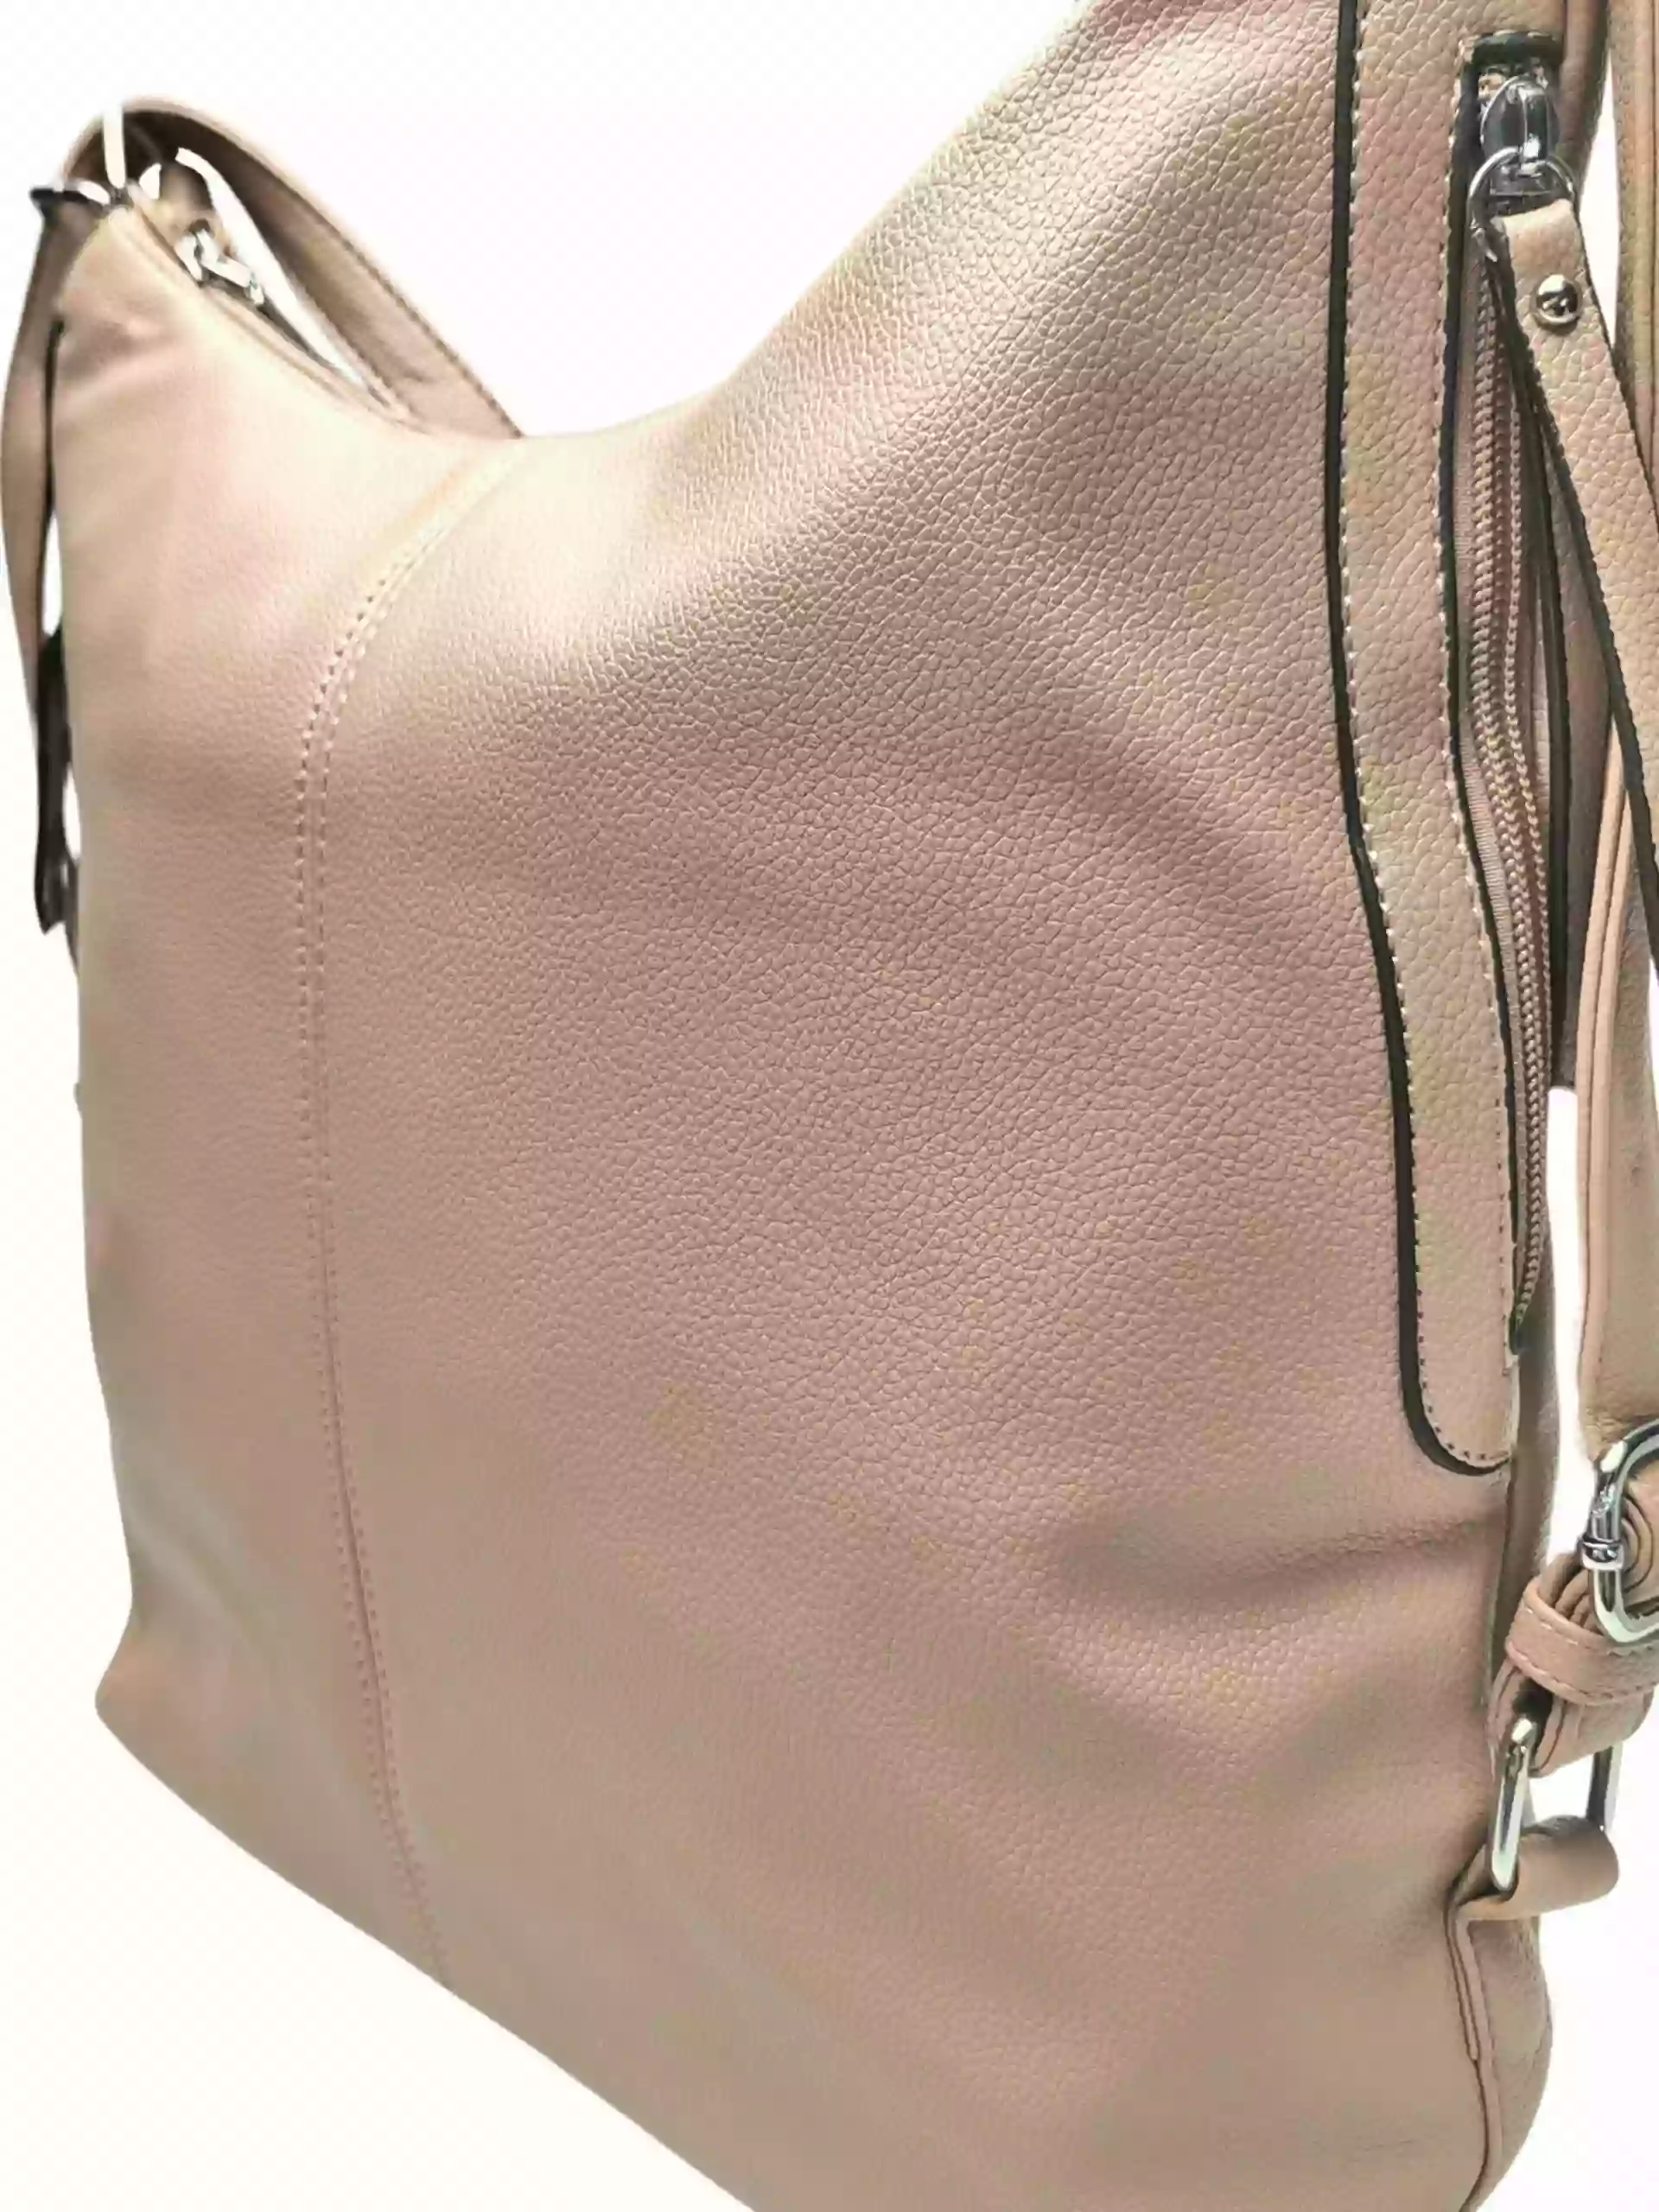 Velký světle hnědý kabelko-batoh s bočními kapsami, Tapple, 9314-3, detail kabelko-batohu